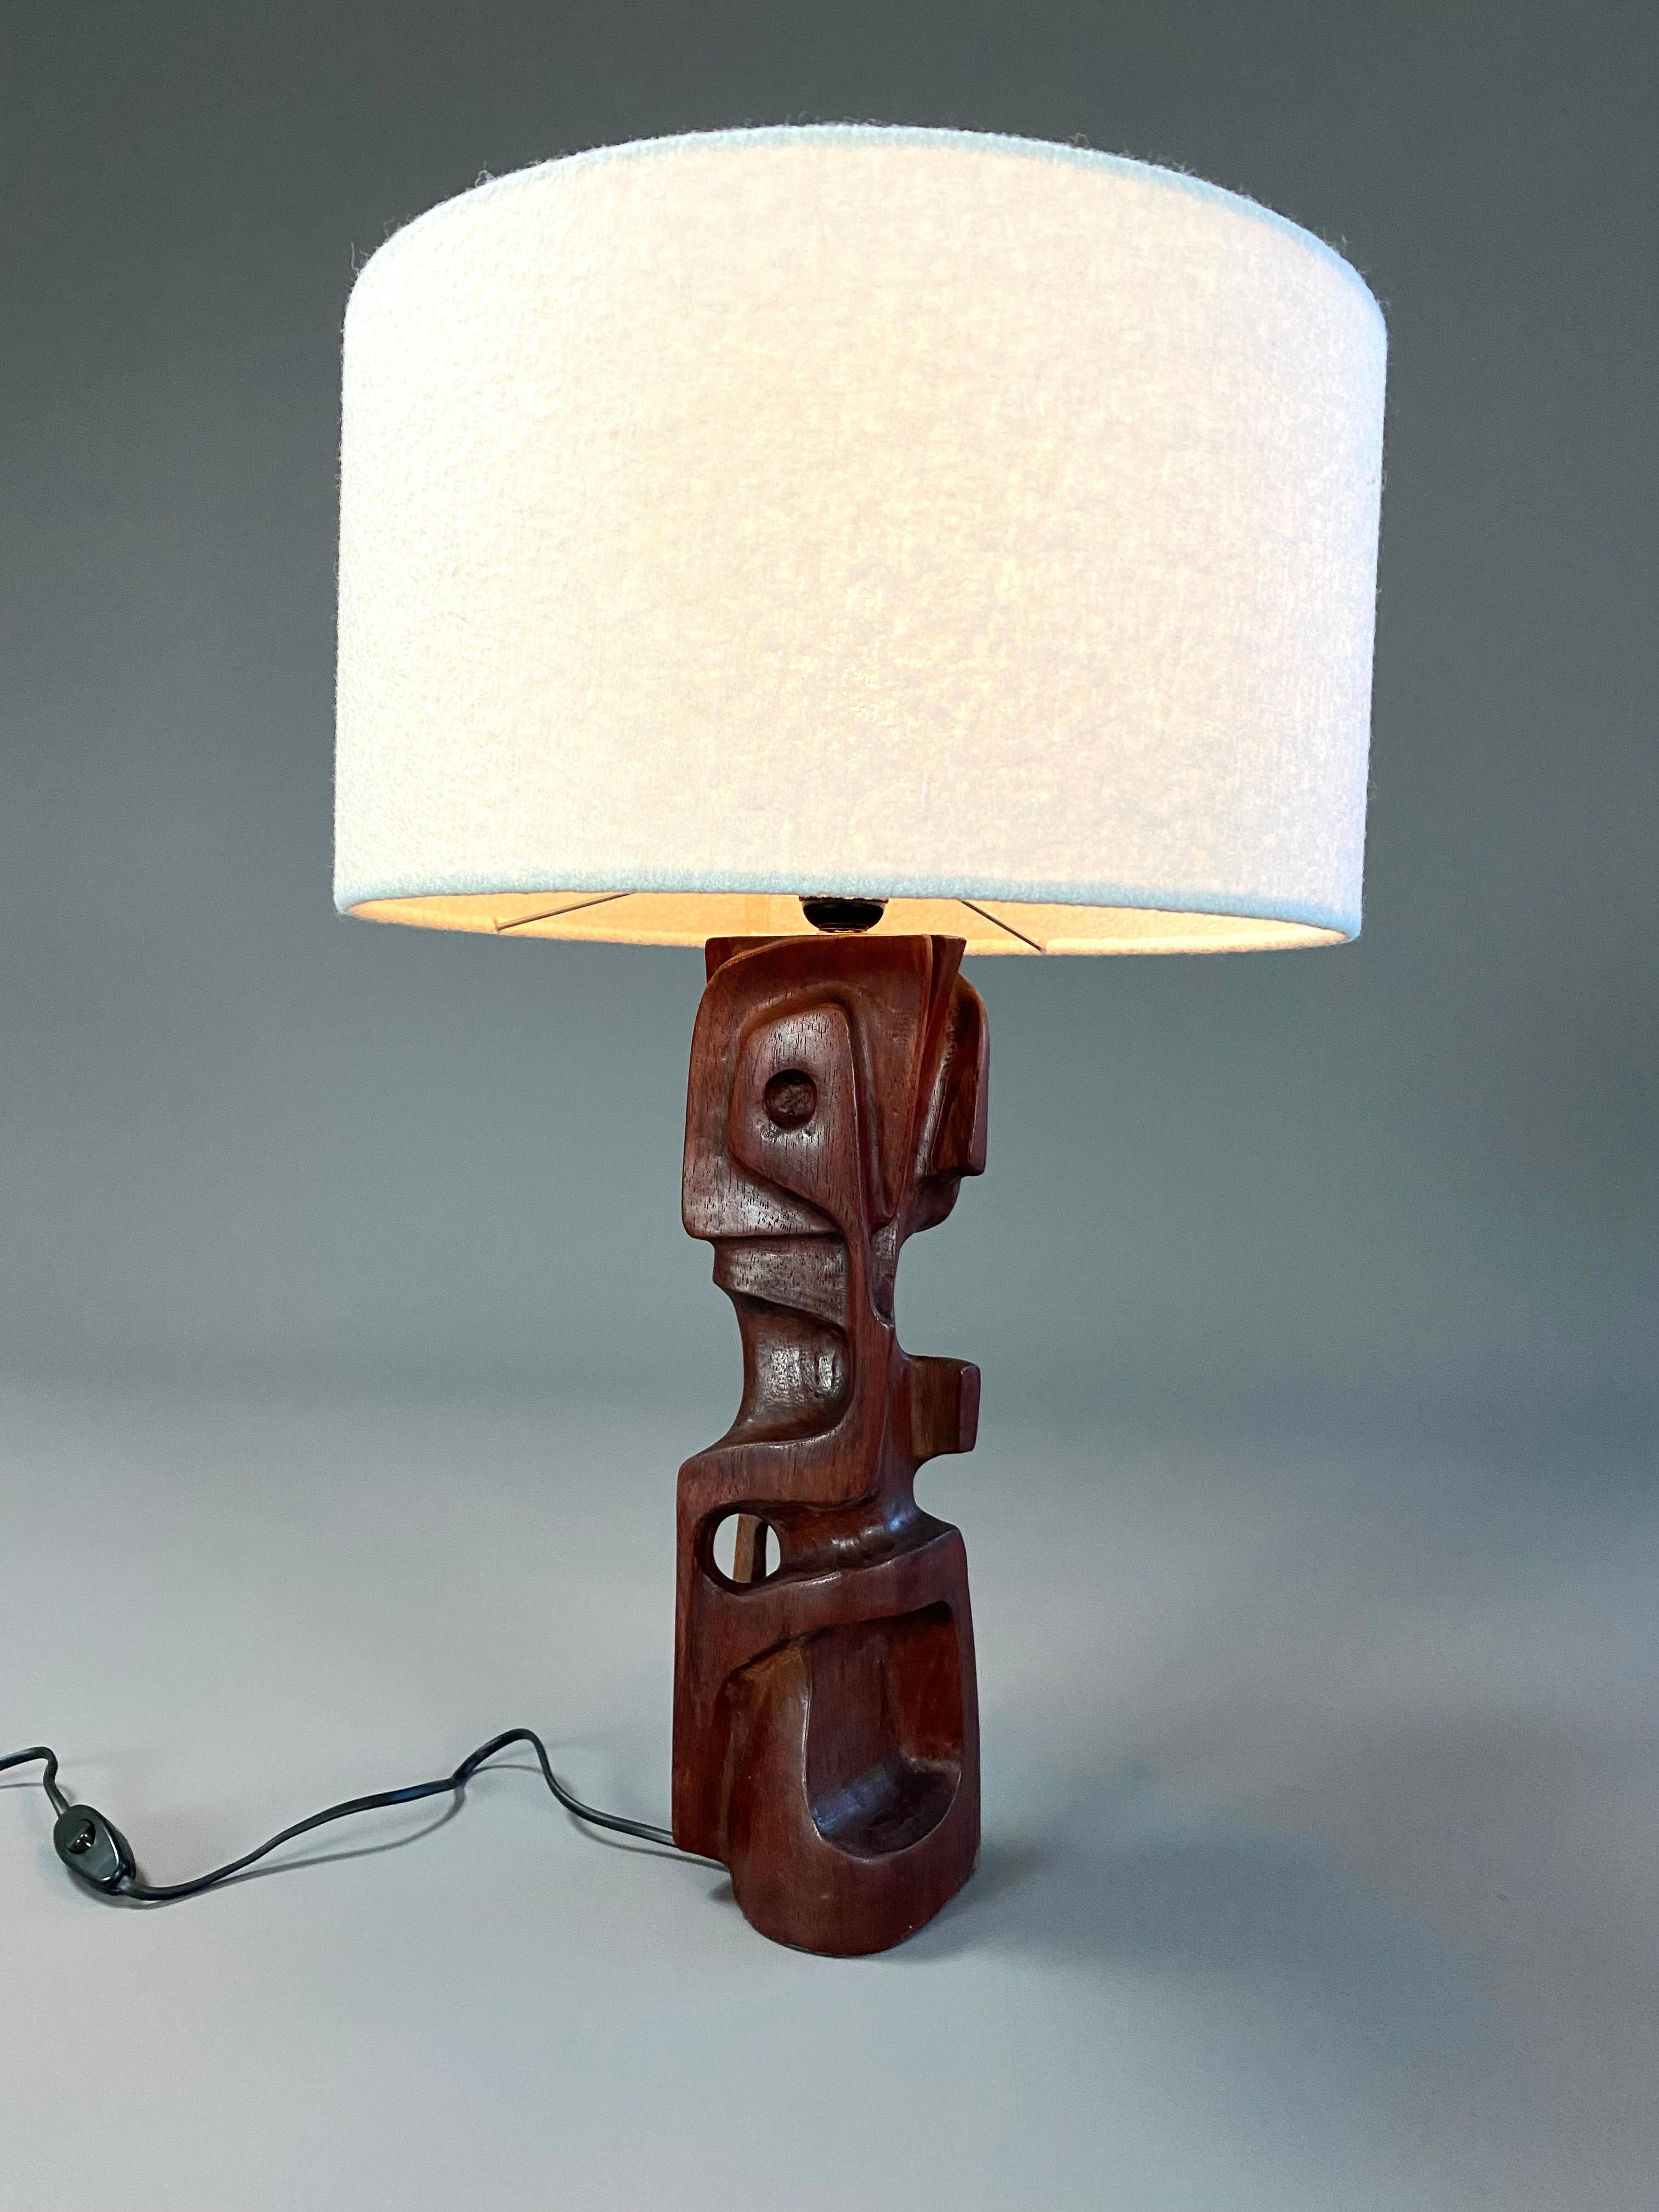 Einzigartiges Paar handgeschnitzter, skulpturaler Tischlampen aus Holz, hergestellt von Gianni Pinna. Die hölzernen Skulpturen, Lampen, sind in gutem Zustand. Keine Risse oder Schäden. Bitte beachten Sie, dass sich die beiden Lampen in der Farbe